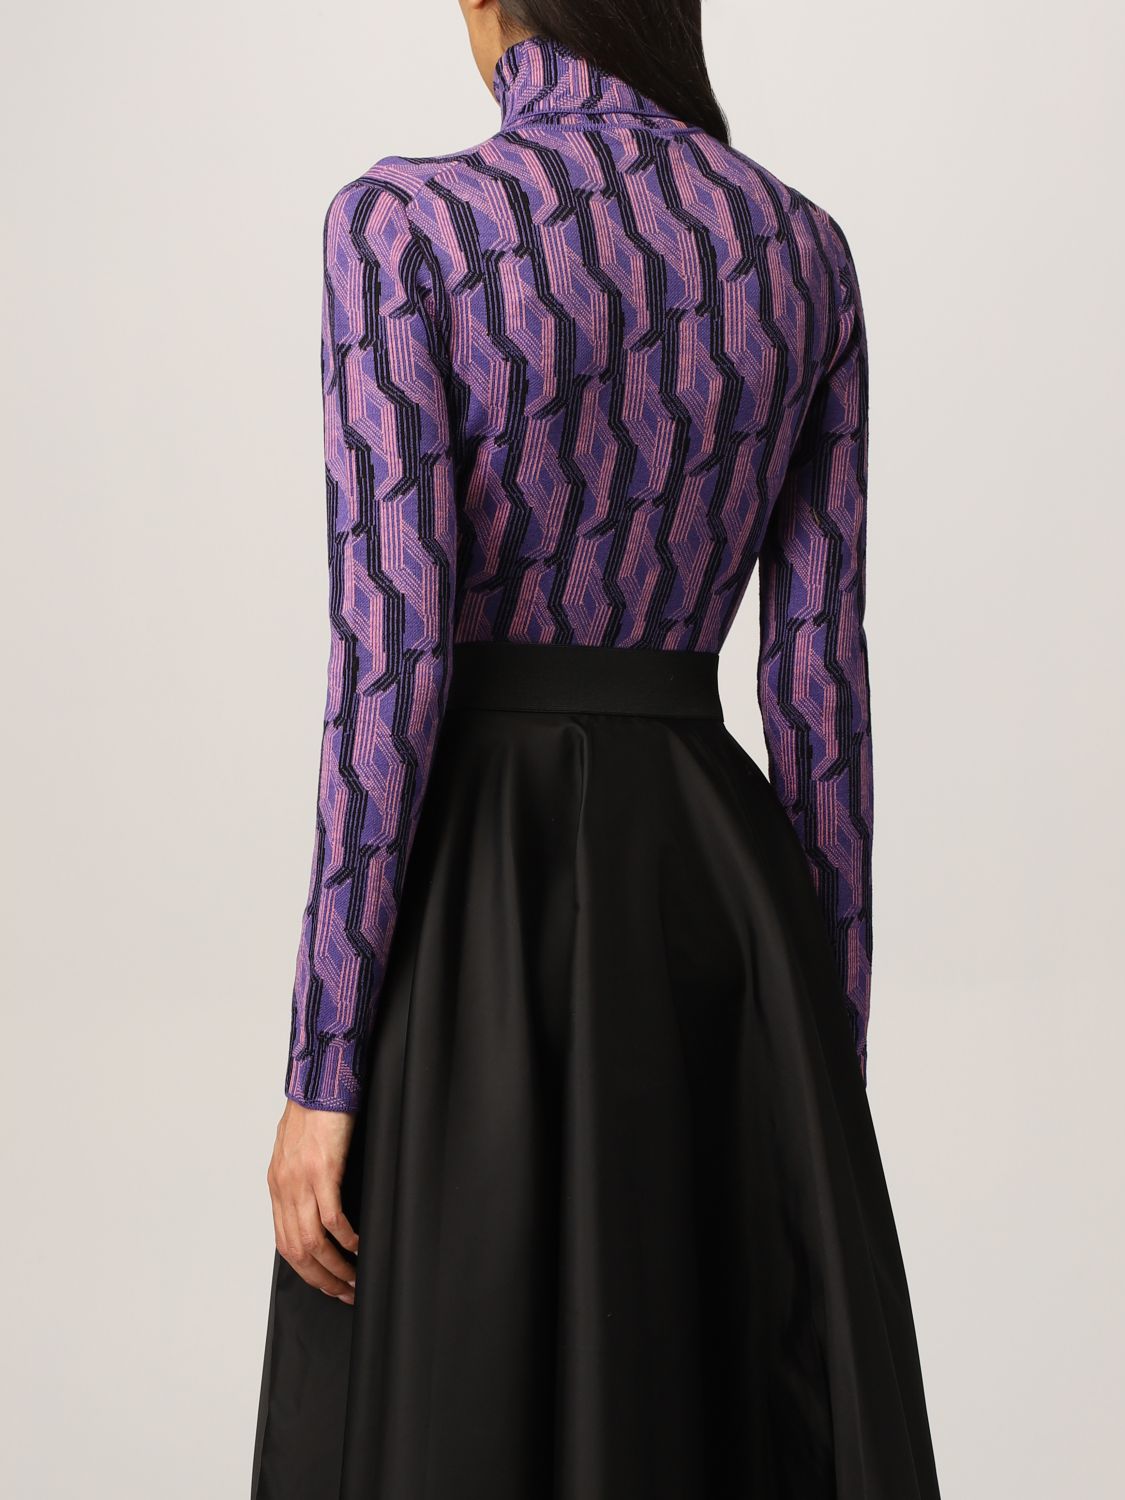 Jersey Prada: Jersey de cuello alto de Prada en lana virgen estampada violeta 3